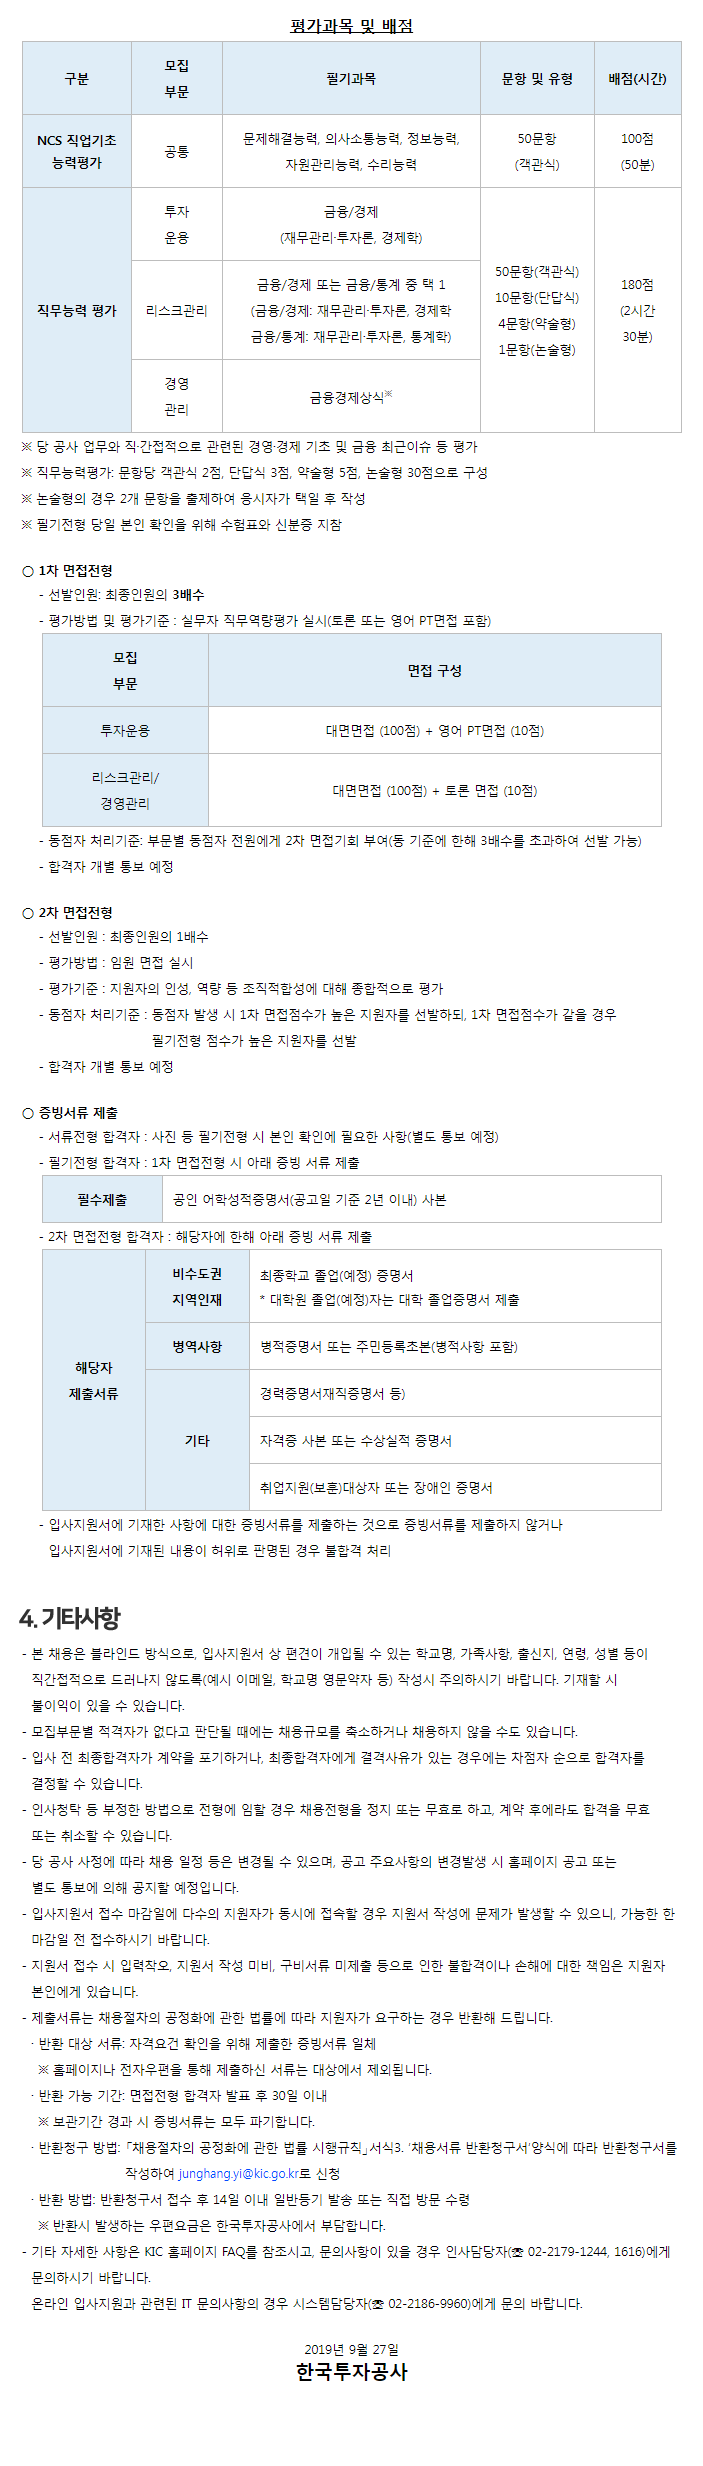 한국투자공사
2019년 신입직원 채용안내